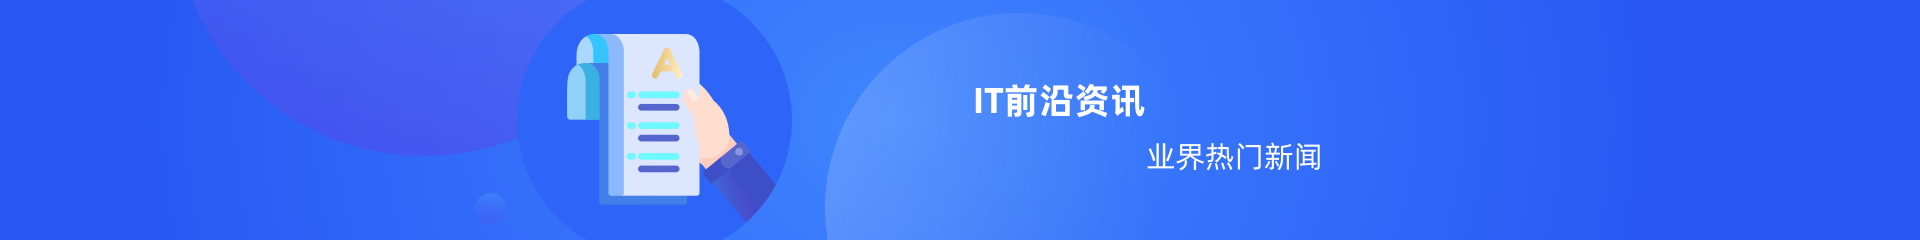 中培教育IT资讯频道